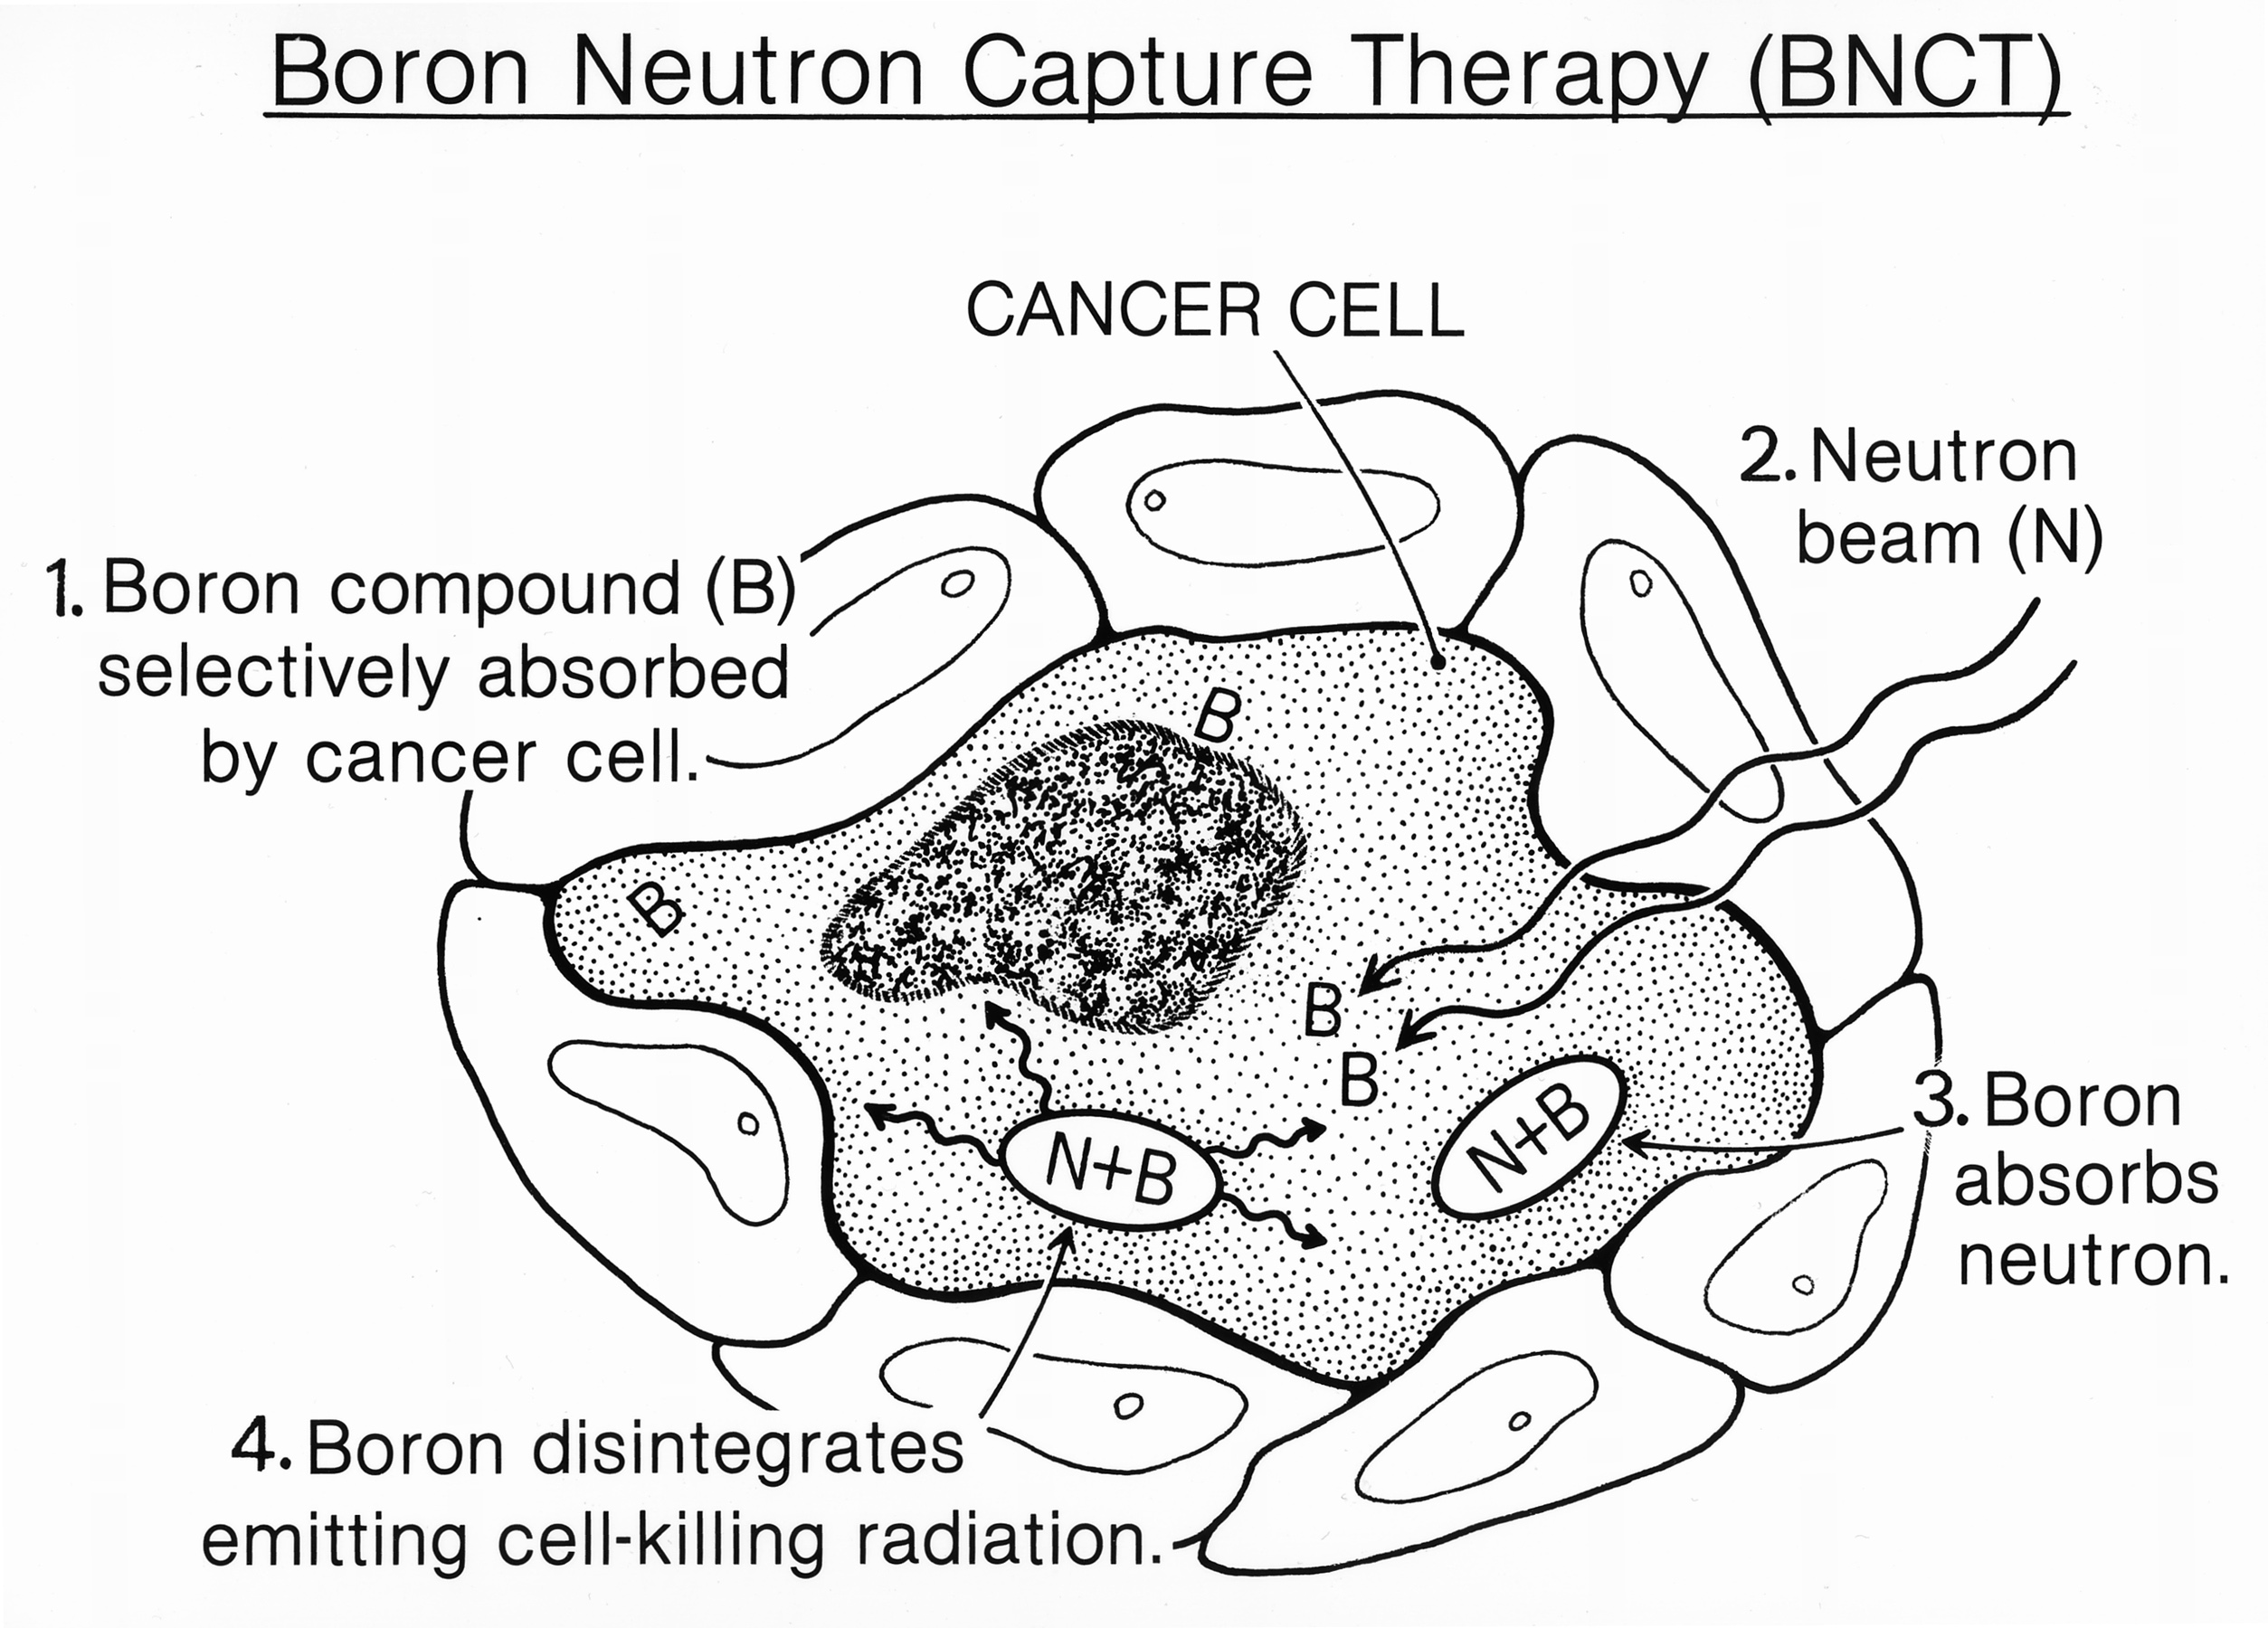 La Boron Neutron Capture Therapy (BNCT) est une méthode d’irradiation en plusieurs étapes : (1) le bore 10 est absorbé par la cellule cancéreuse, (2) le neutron entre à son tour dans la cellule, (3) le bore interagit avec le neutron pour donner du bore 11, (4) le bore 11 se désintègre et émet des radiations qui tuent la cellule. © National Cancer Institut, Wikimedia Commons, cc by sa 3.0